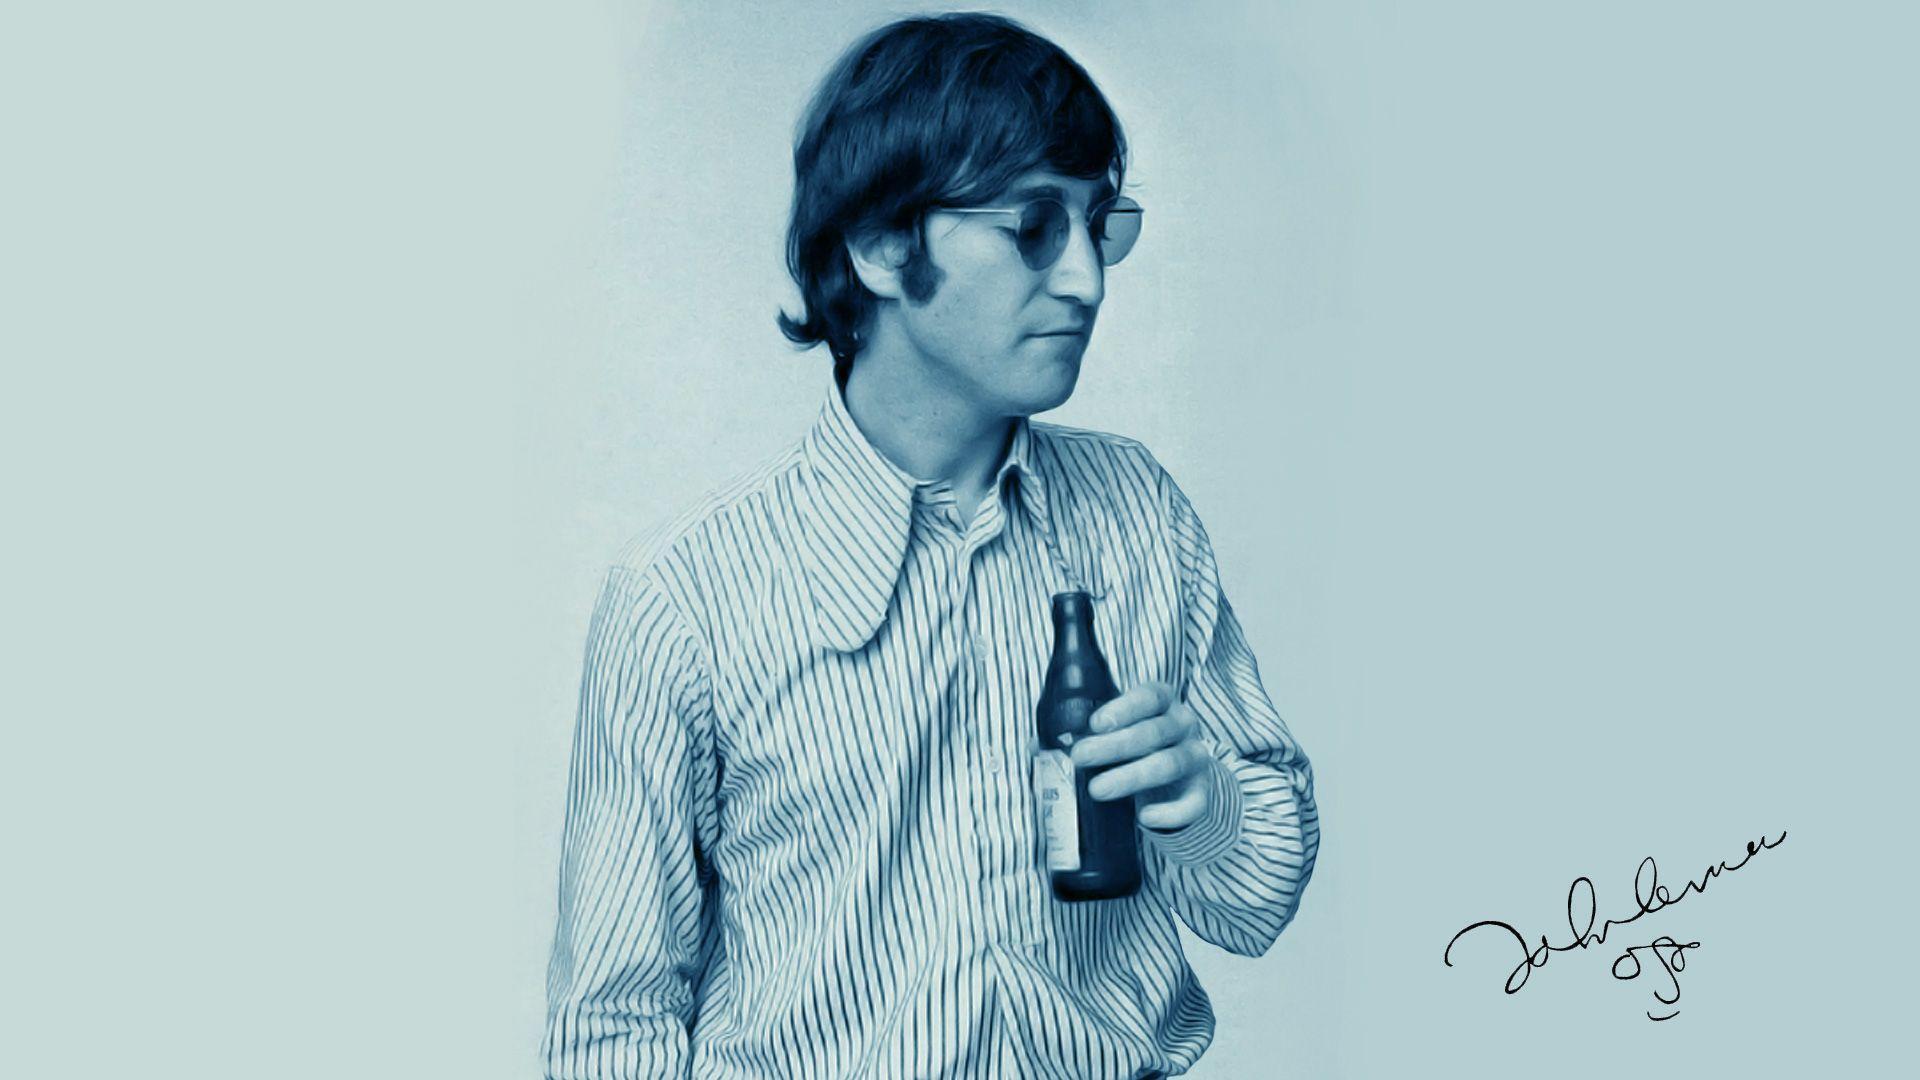 John Lennon 2013 wallpaper. High Quality Wallpaper, Wallpaper